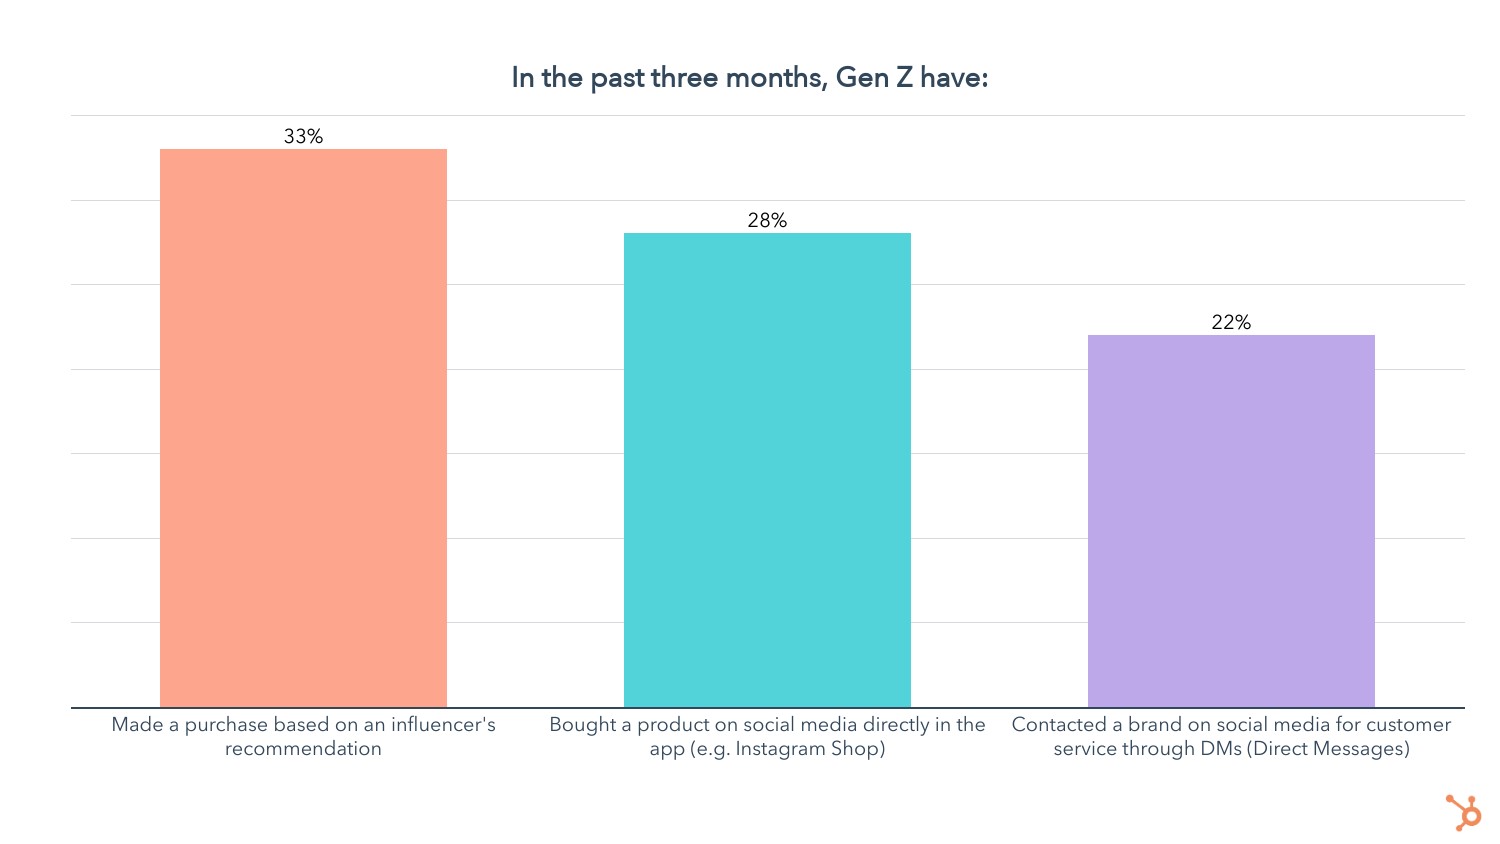 gen z activities in the past three months